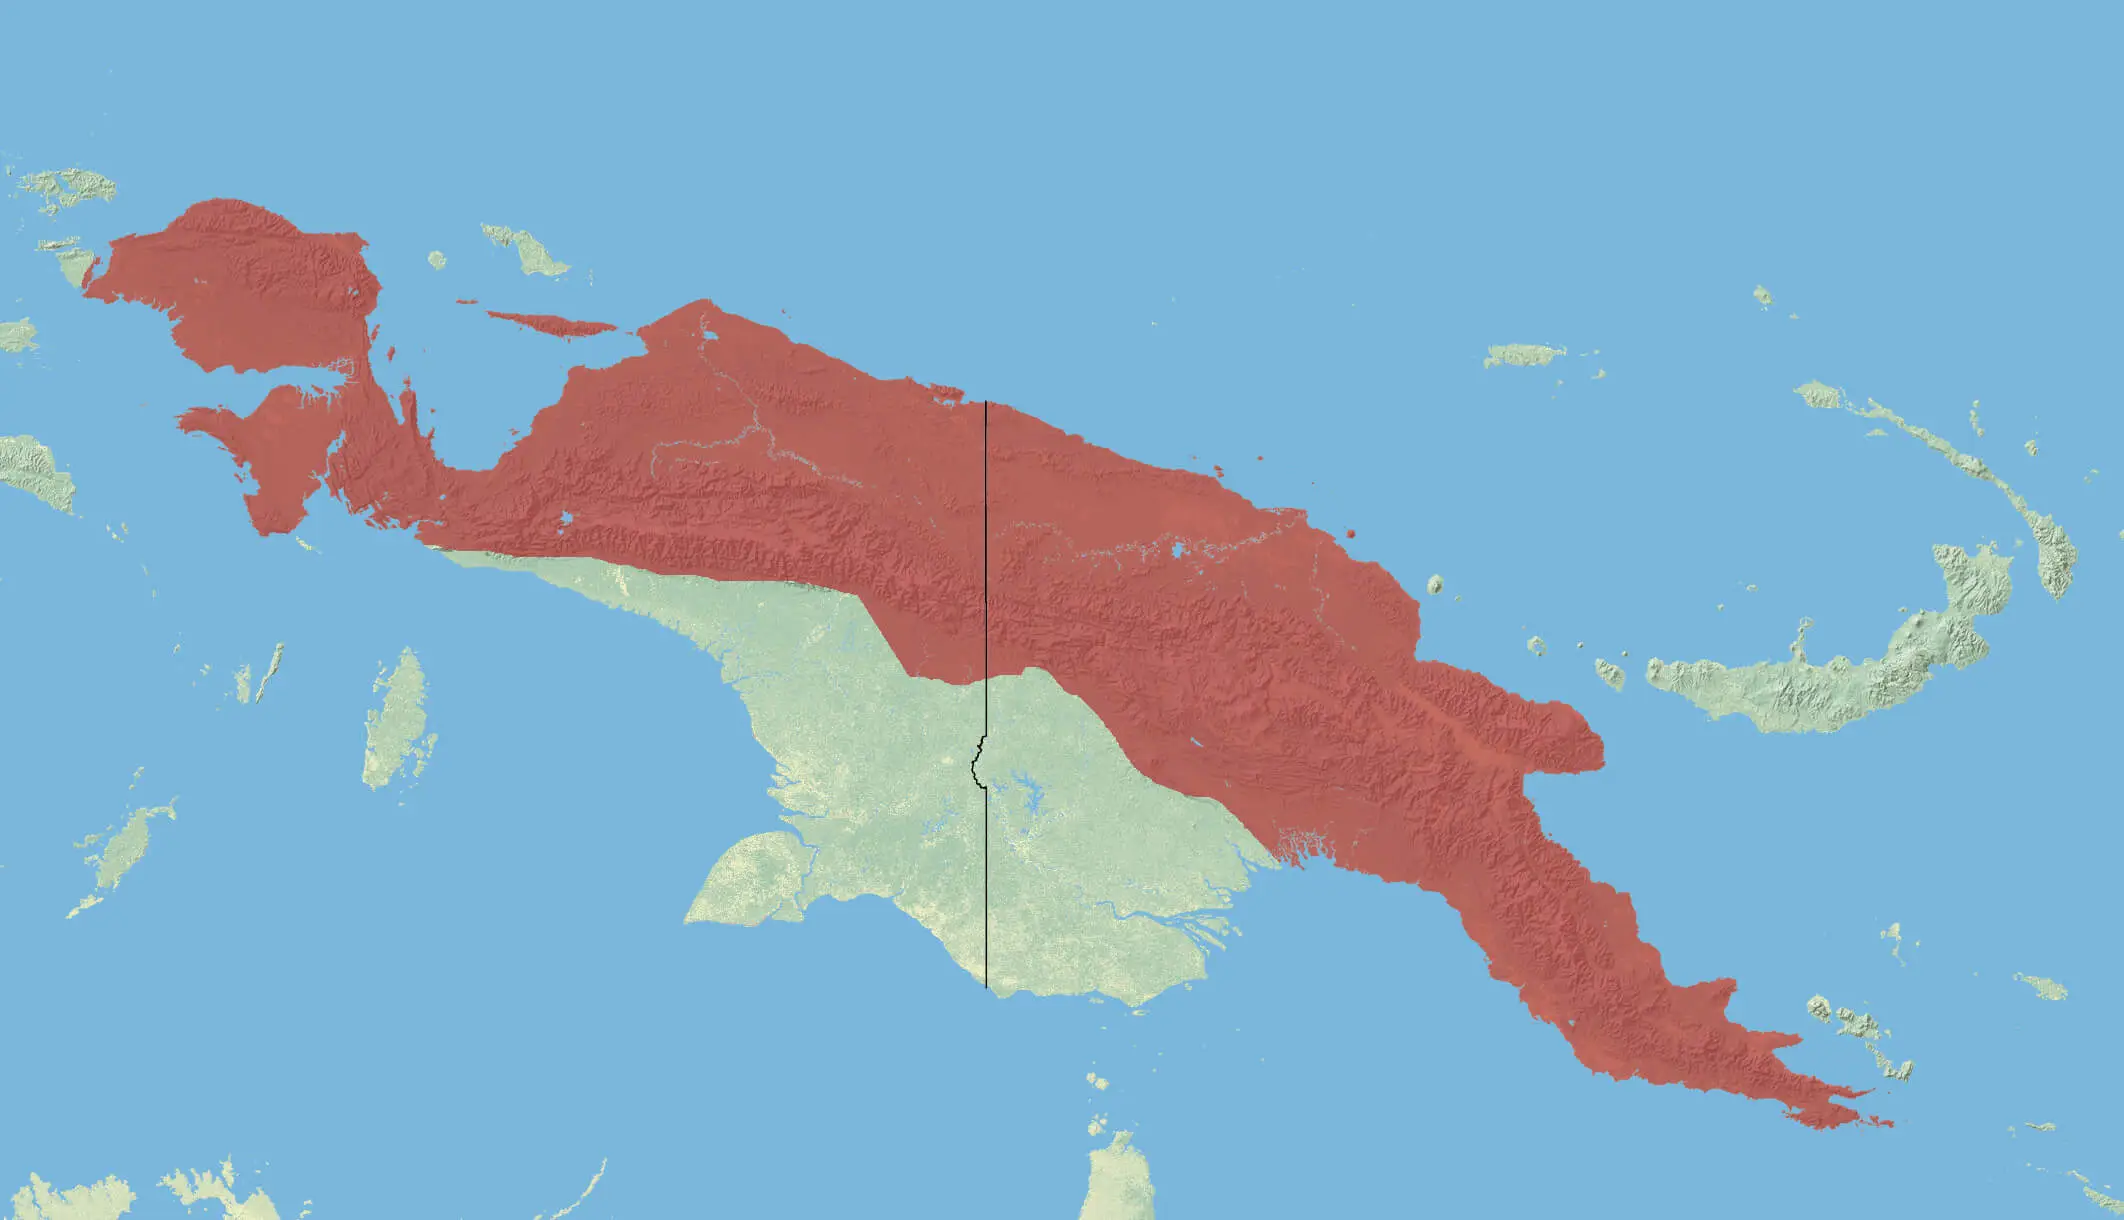 New Guinean quoll habitat map